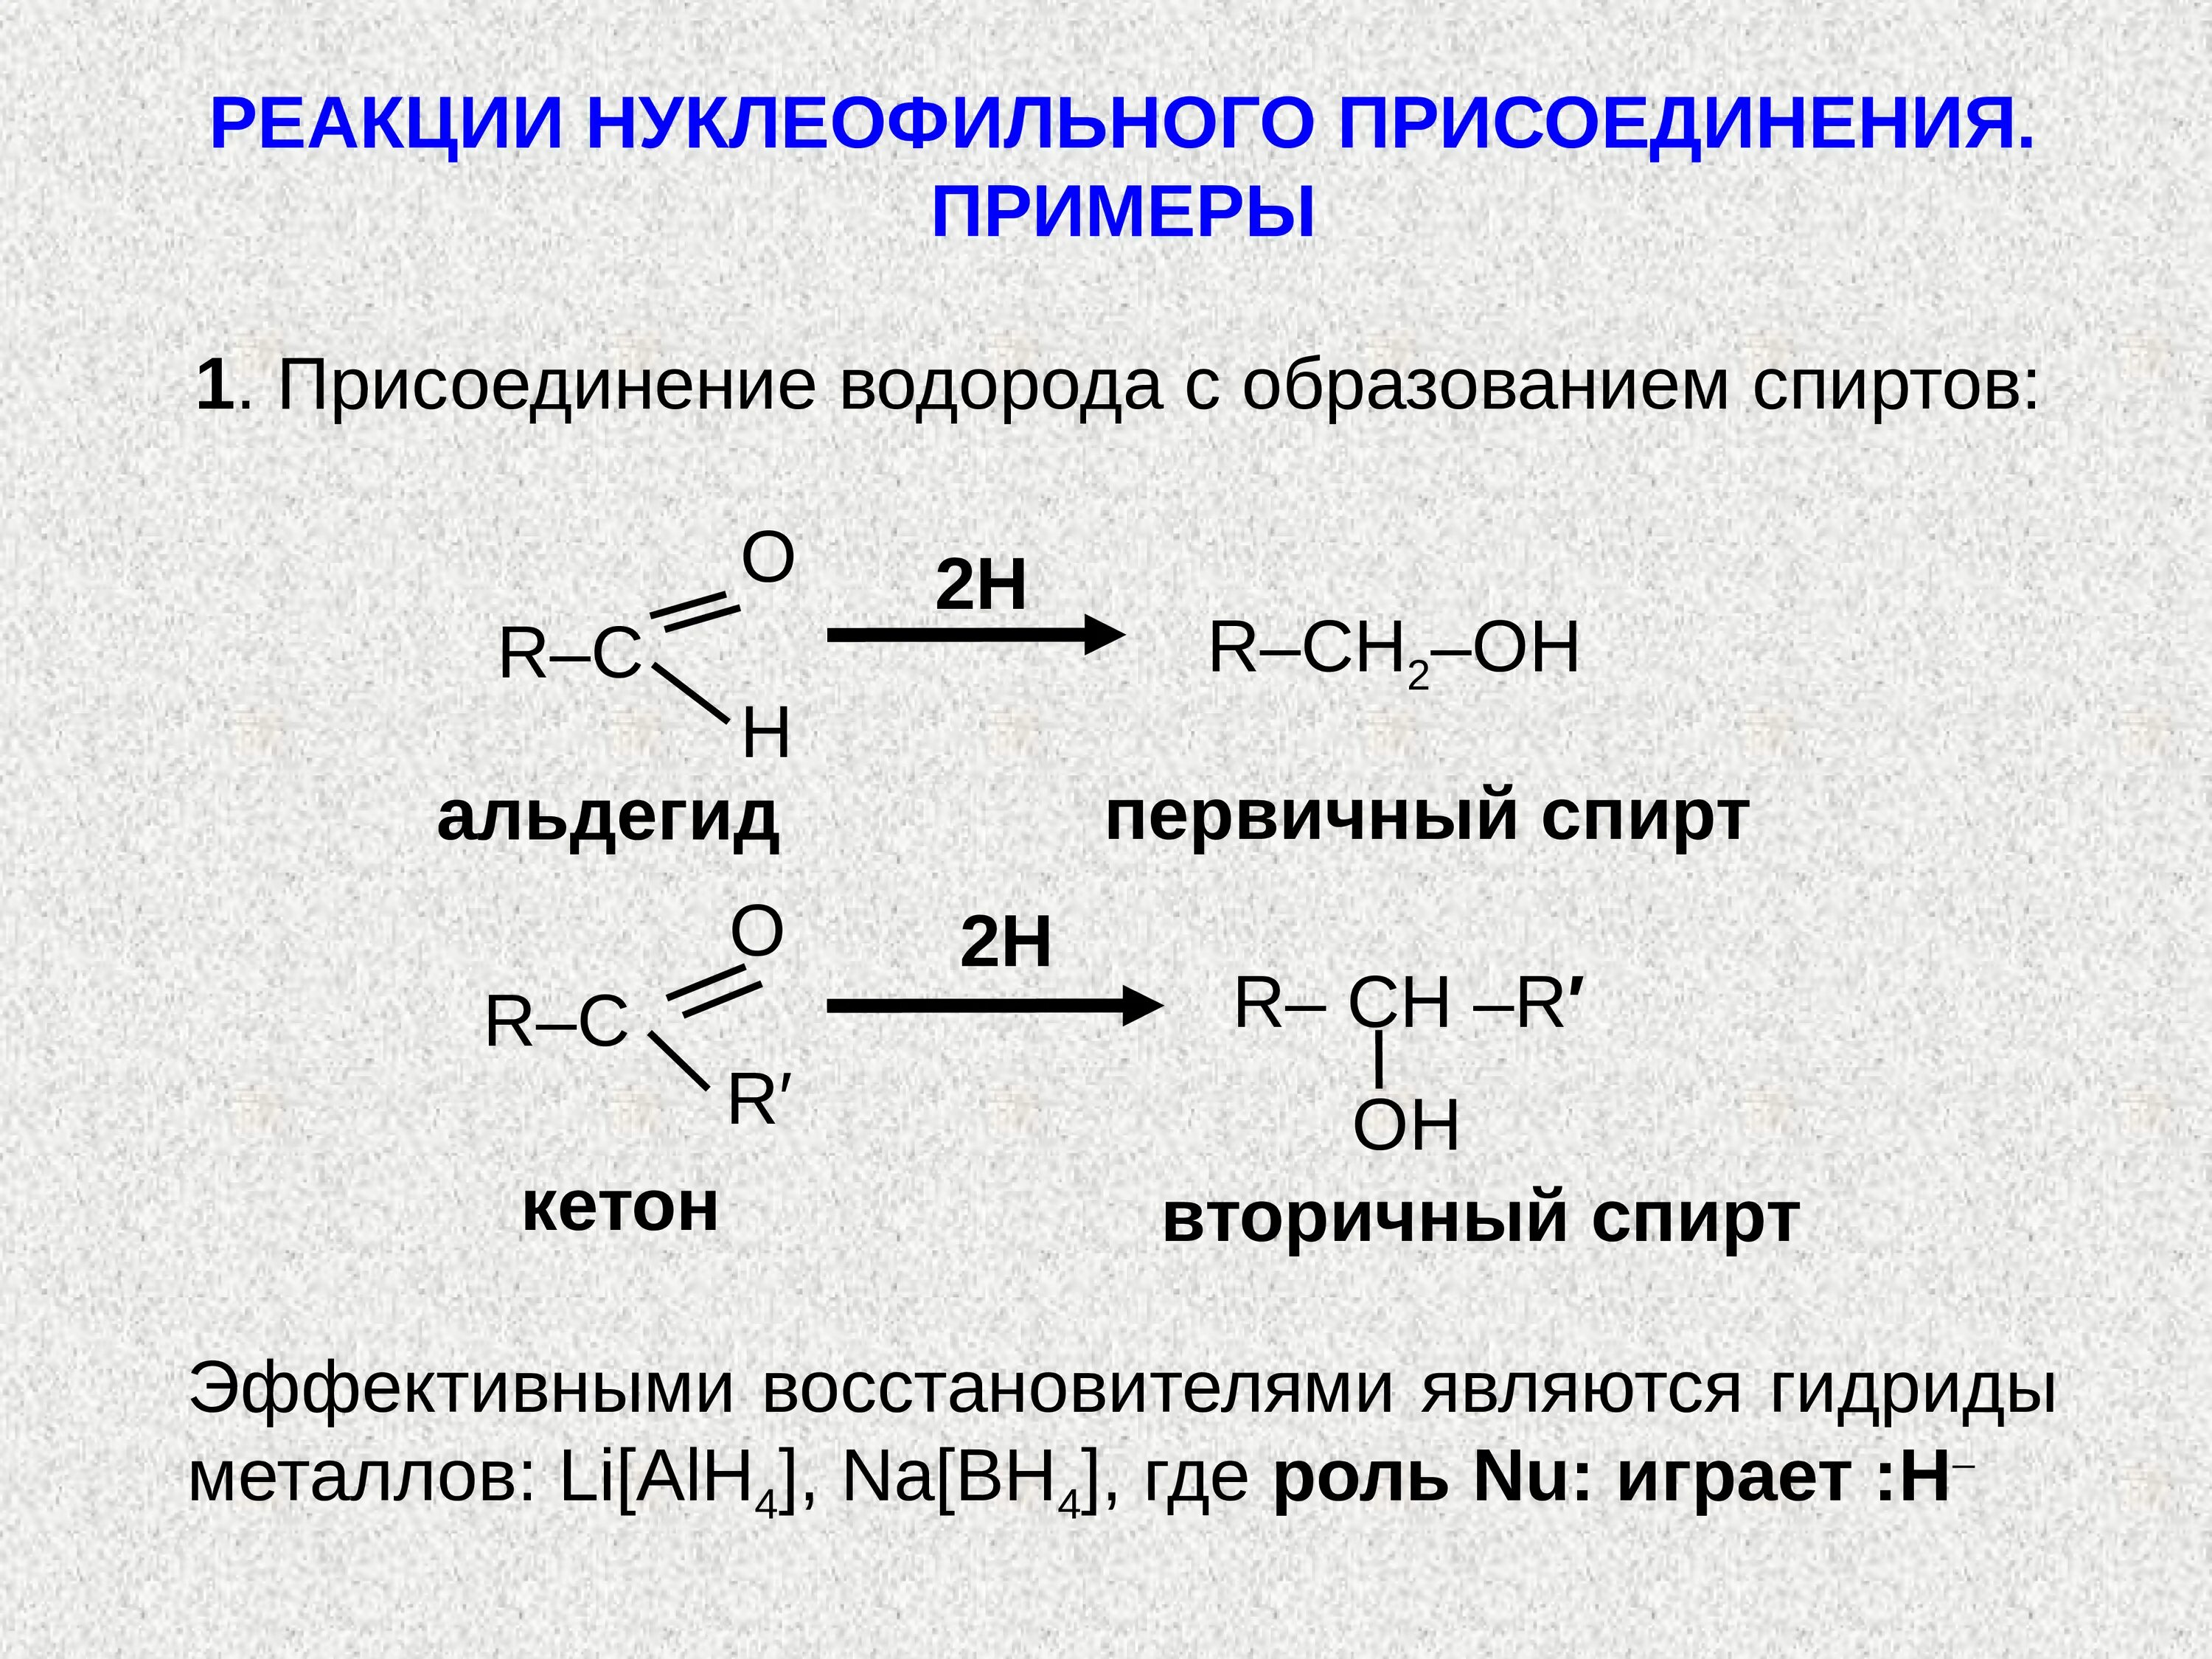 Реакция нуклеофильного присоединения альдегидов. Присоединение спиртов альдегидов и кетонов. Нуклеофильное присоединение альдегидов и кетонов. Реакции нуклеофильного присоединения альдегидов и кетонов. Реакции с водородом название